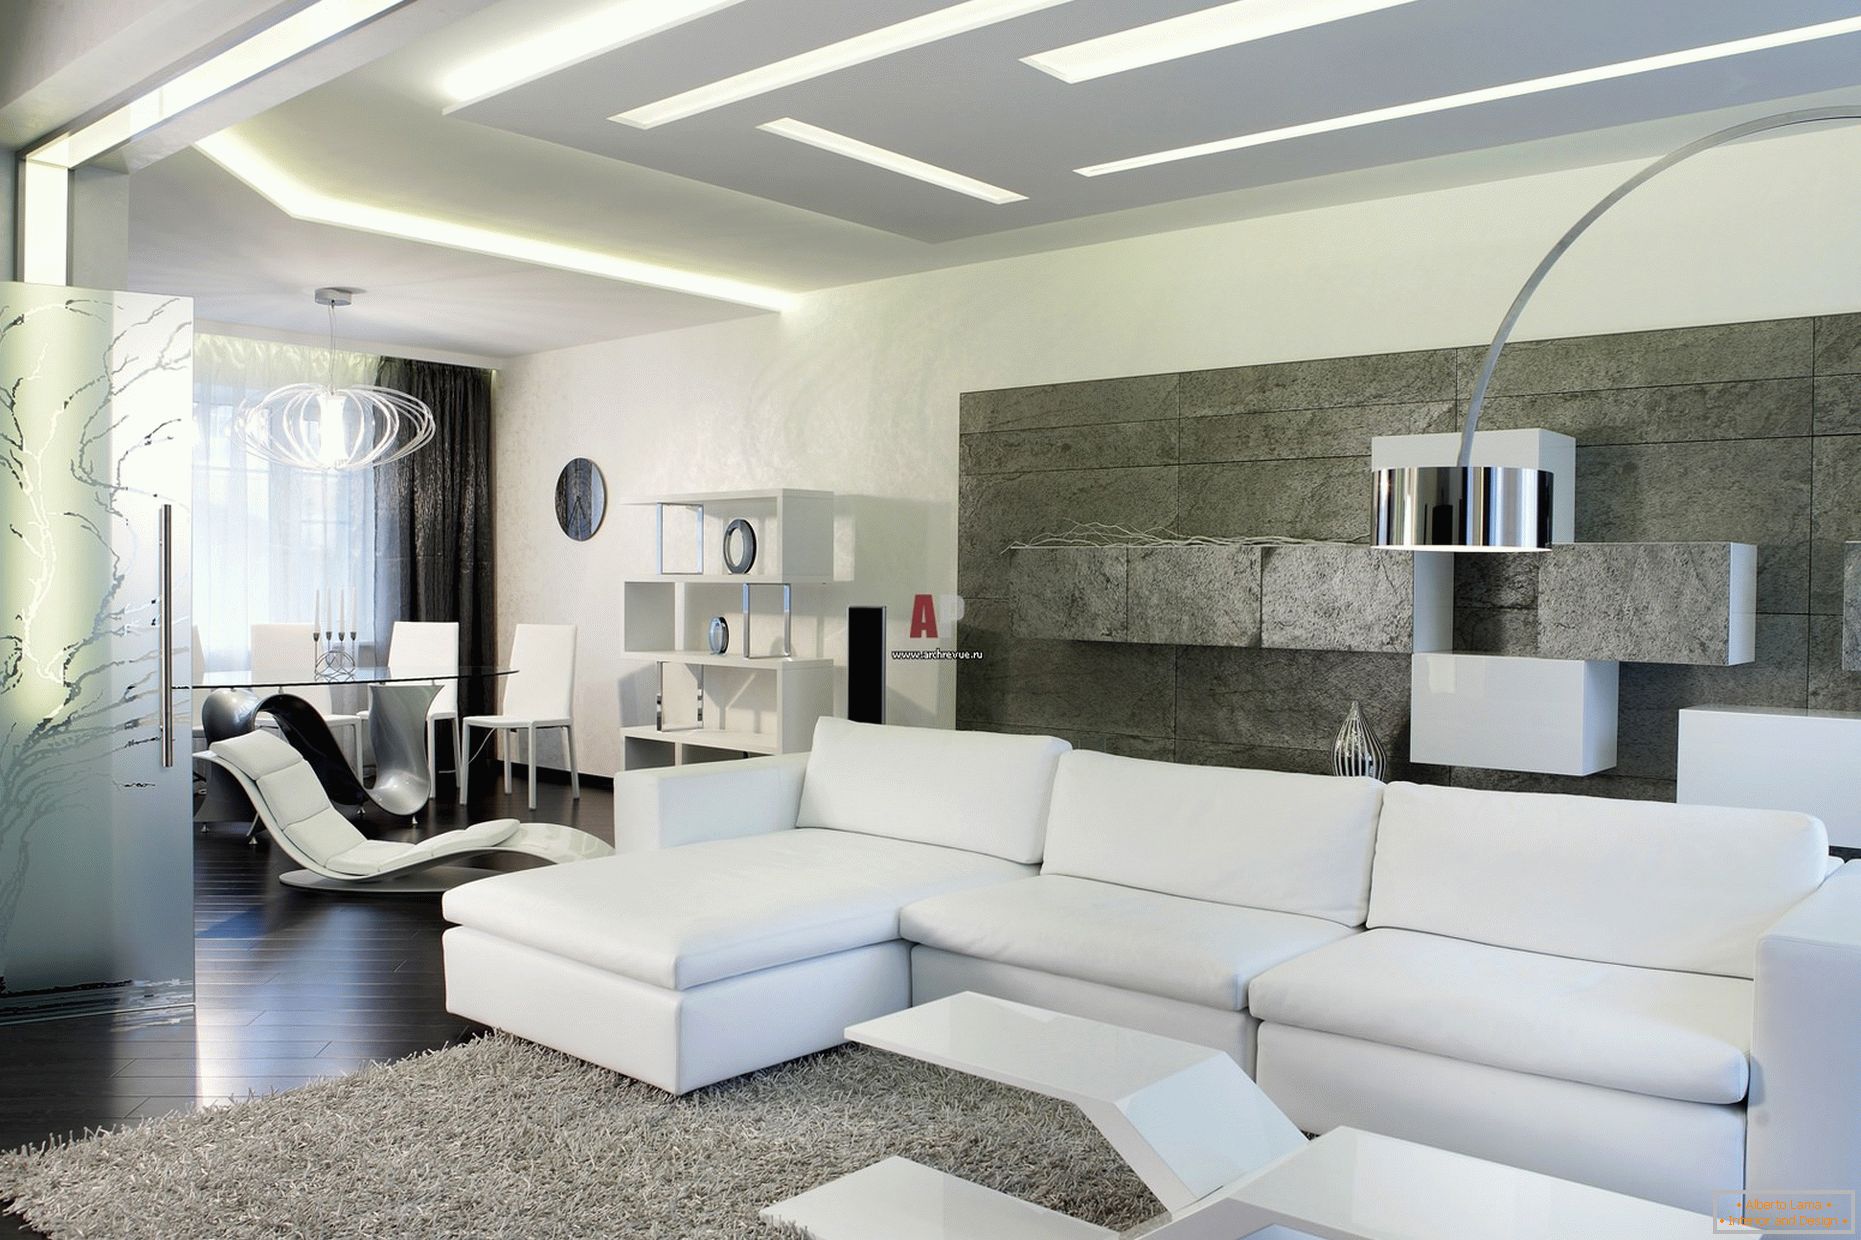 Biela interiér hostí v minimalistickom štýle je pozoruhodný pre moderný, odvážny dizajn s náznakmi high-tech.